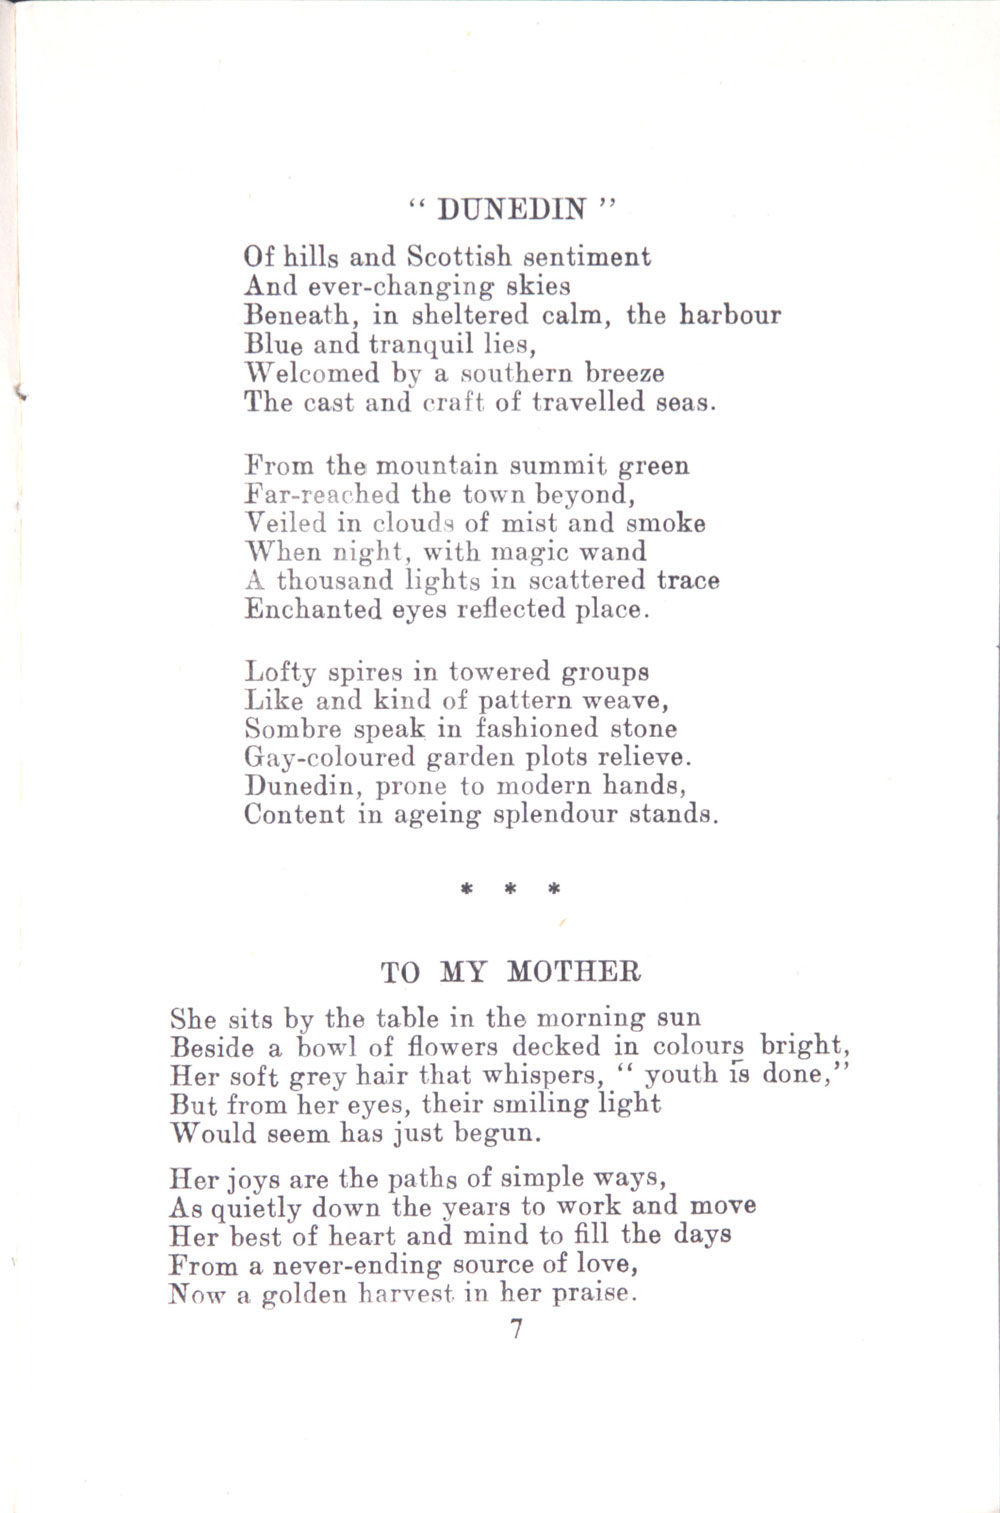 Kathleen Butler. <em>Dunedin and other poems.</em> Ilfracombe: Arthur H. Stockwell Ltd., [ca. 1934]